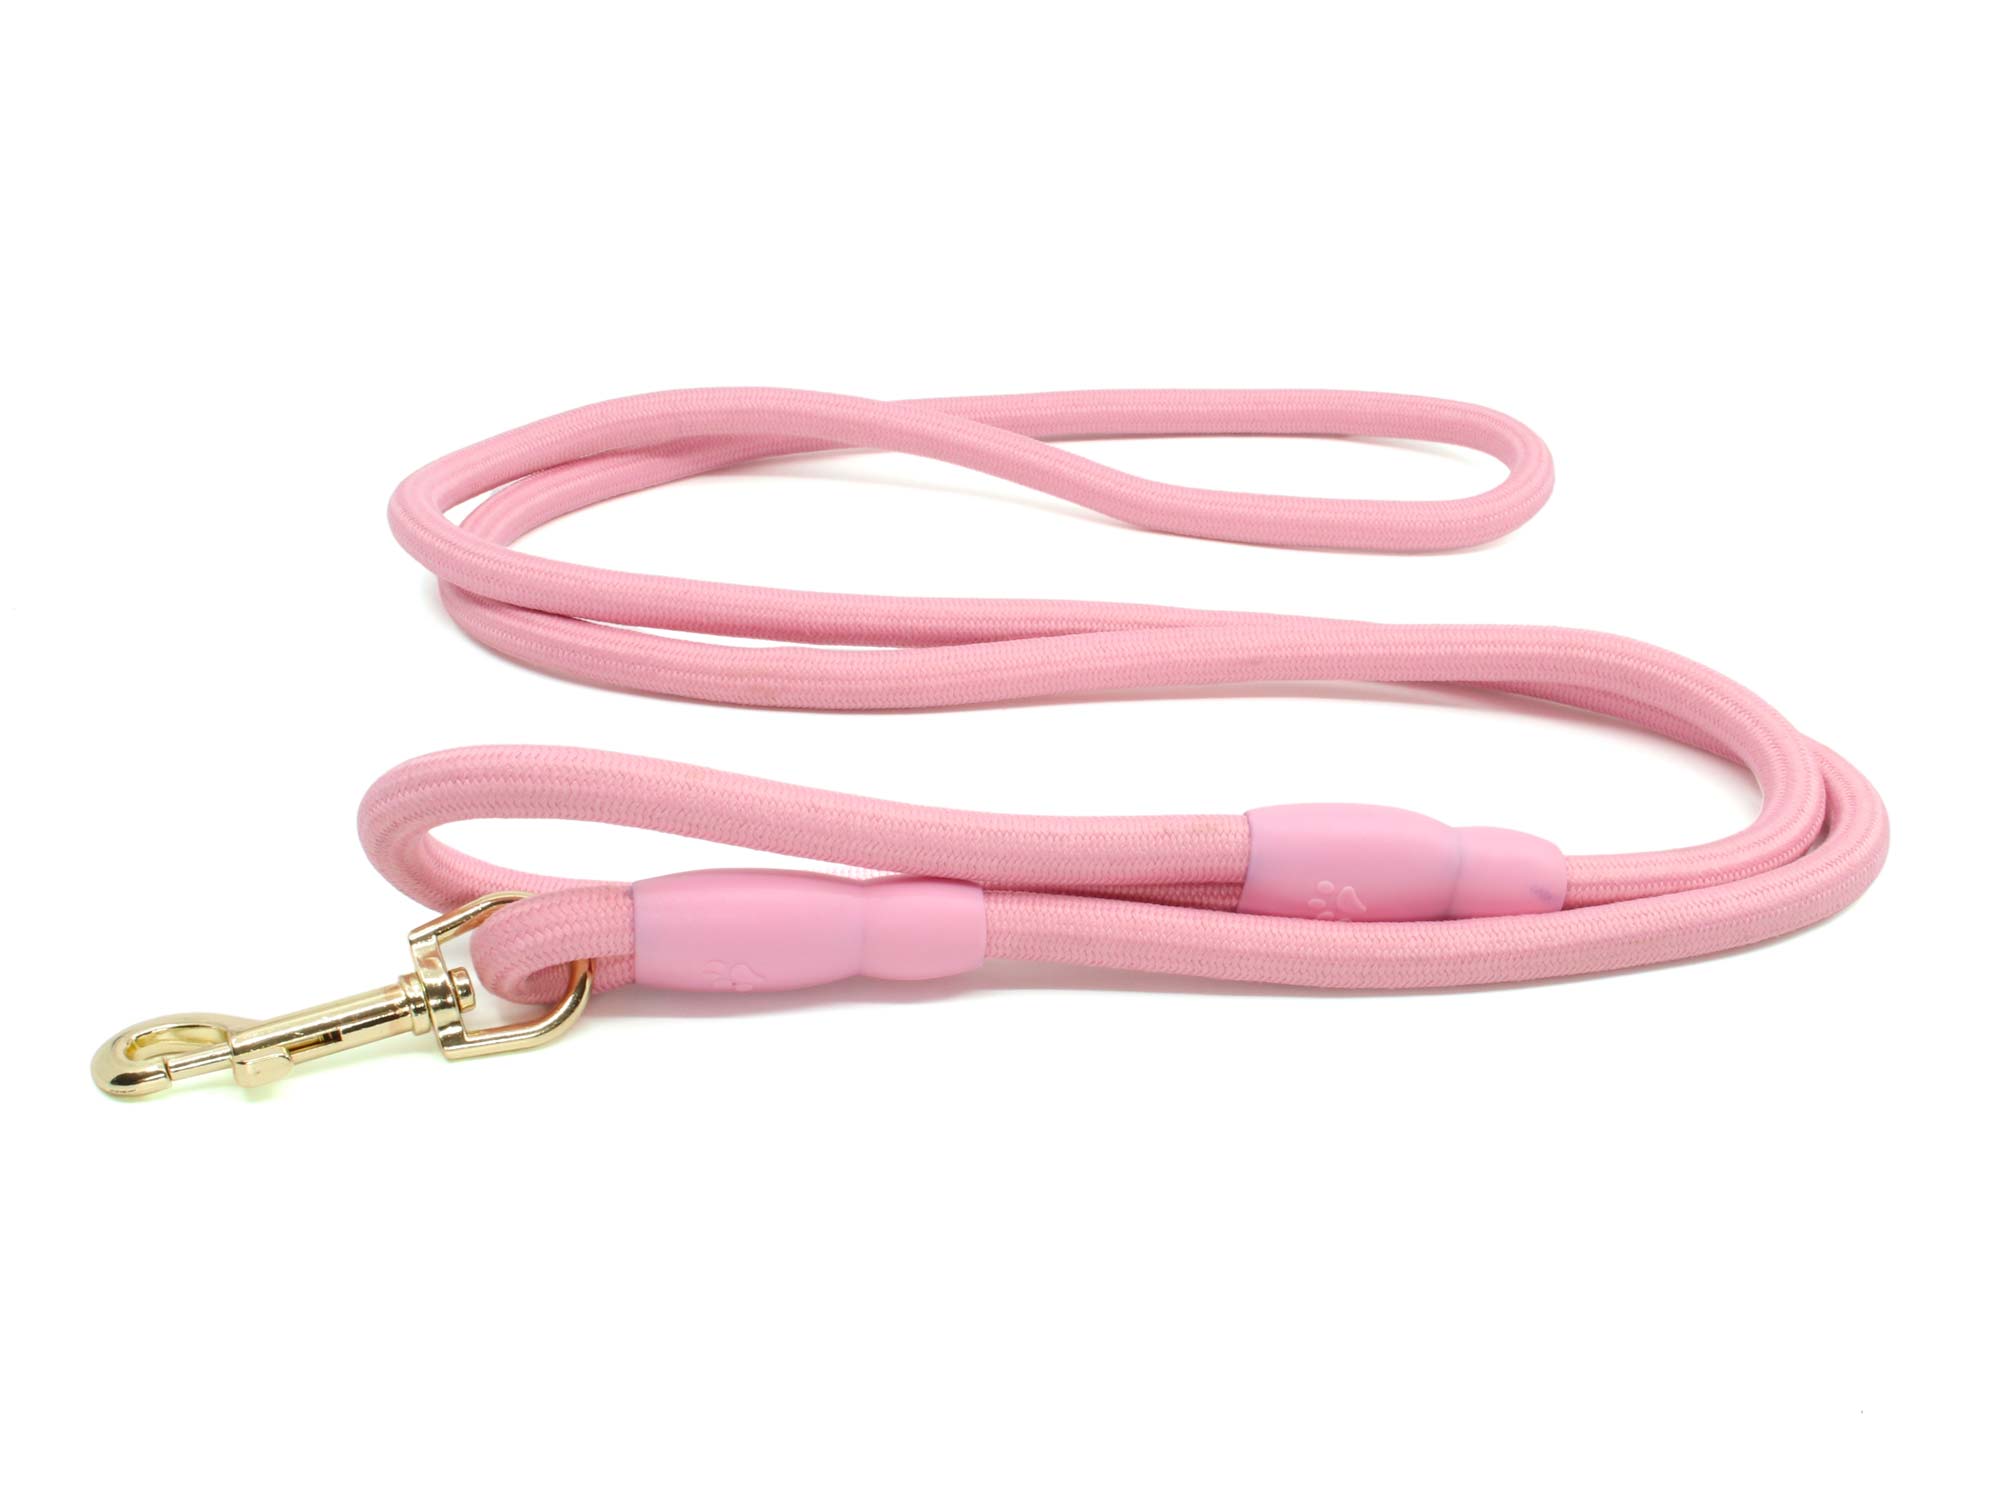 Vsepropejska Karo vodítko pro psa | 190 cm Barva: Růžová, Délka vodítka: 190 cm, Šířka vodítka: 0,8 cm